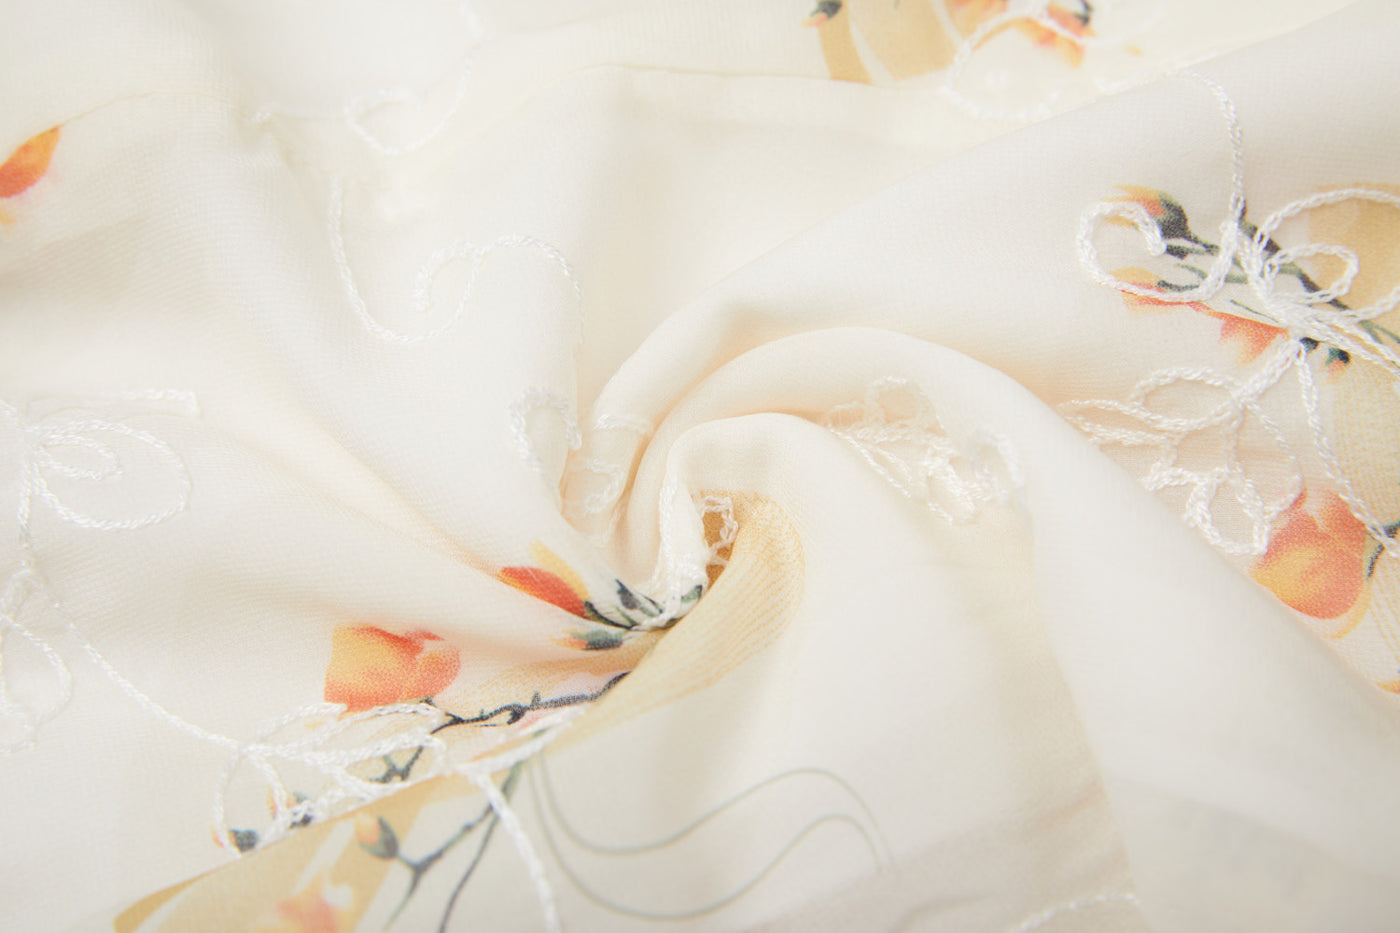 Baby Kids Girl Ivory Cheongsam Dress w Lotus Flower Prints Embroidered White Flowers Sling Bag Set - Little Kooma